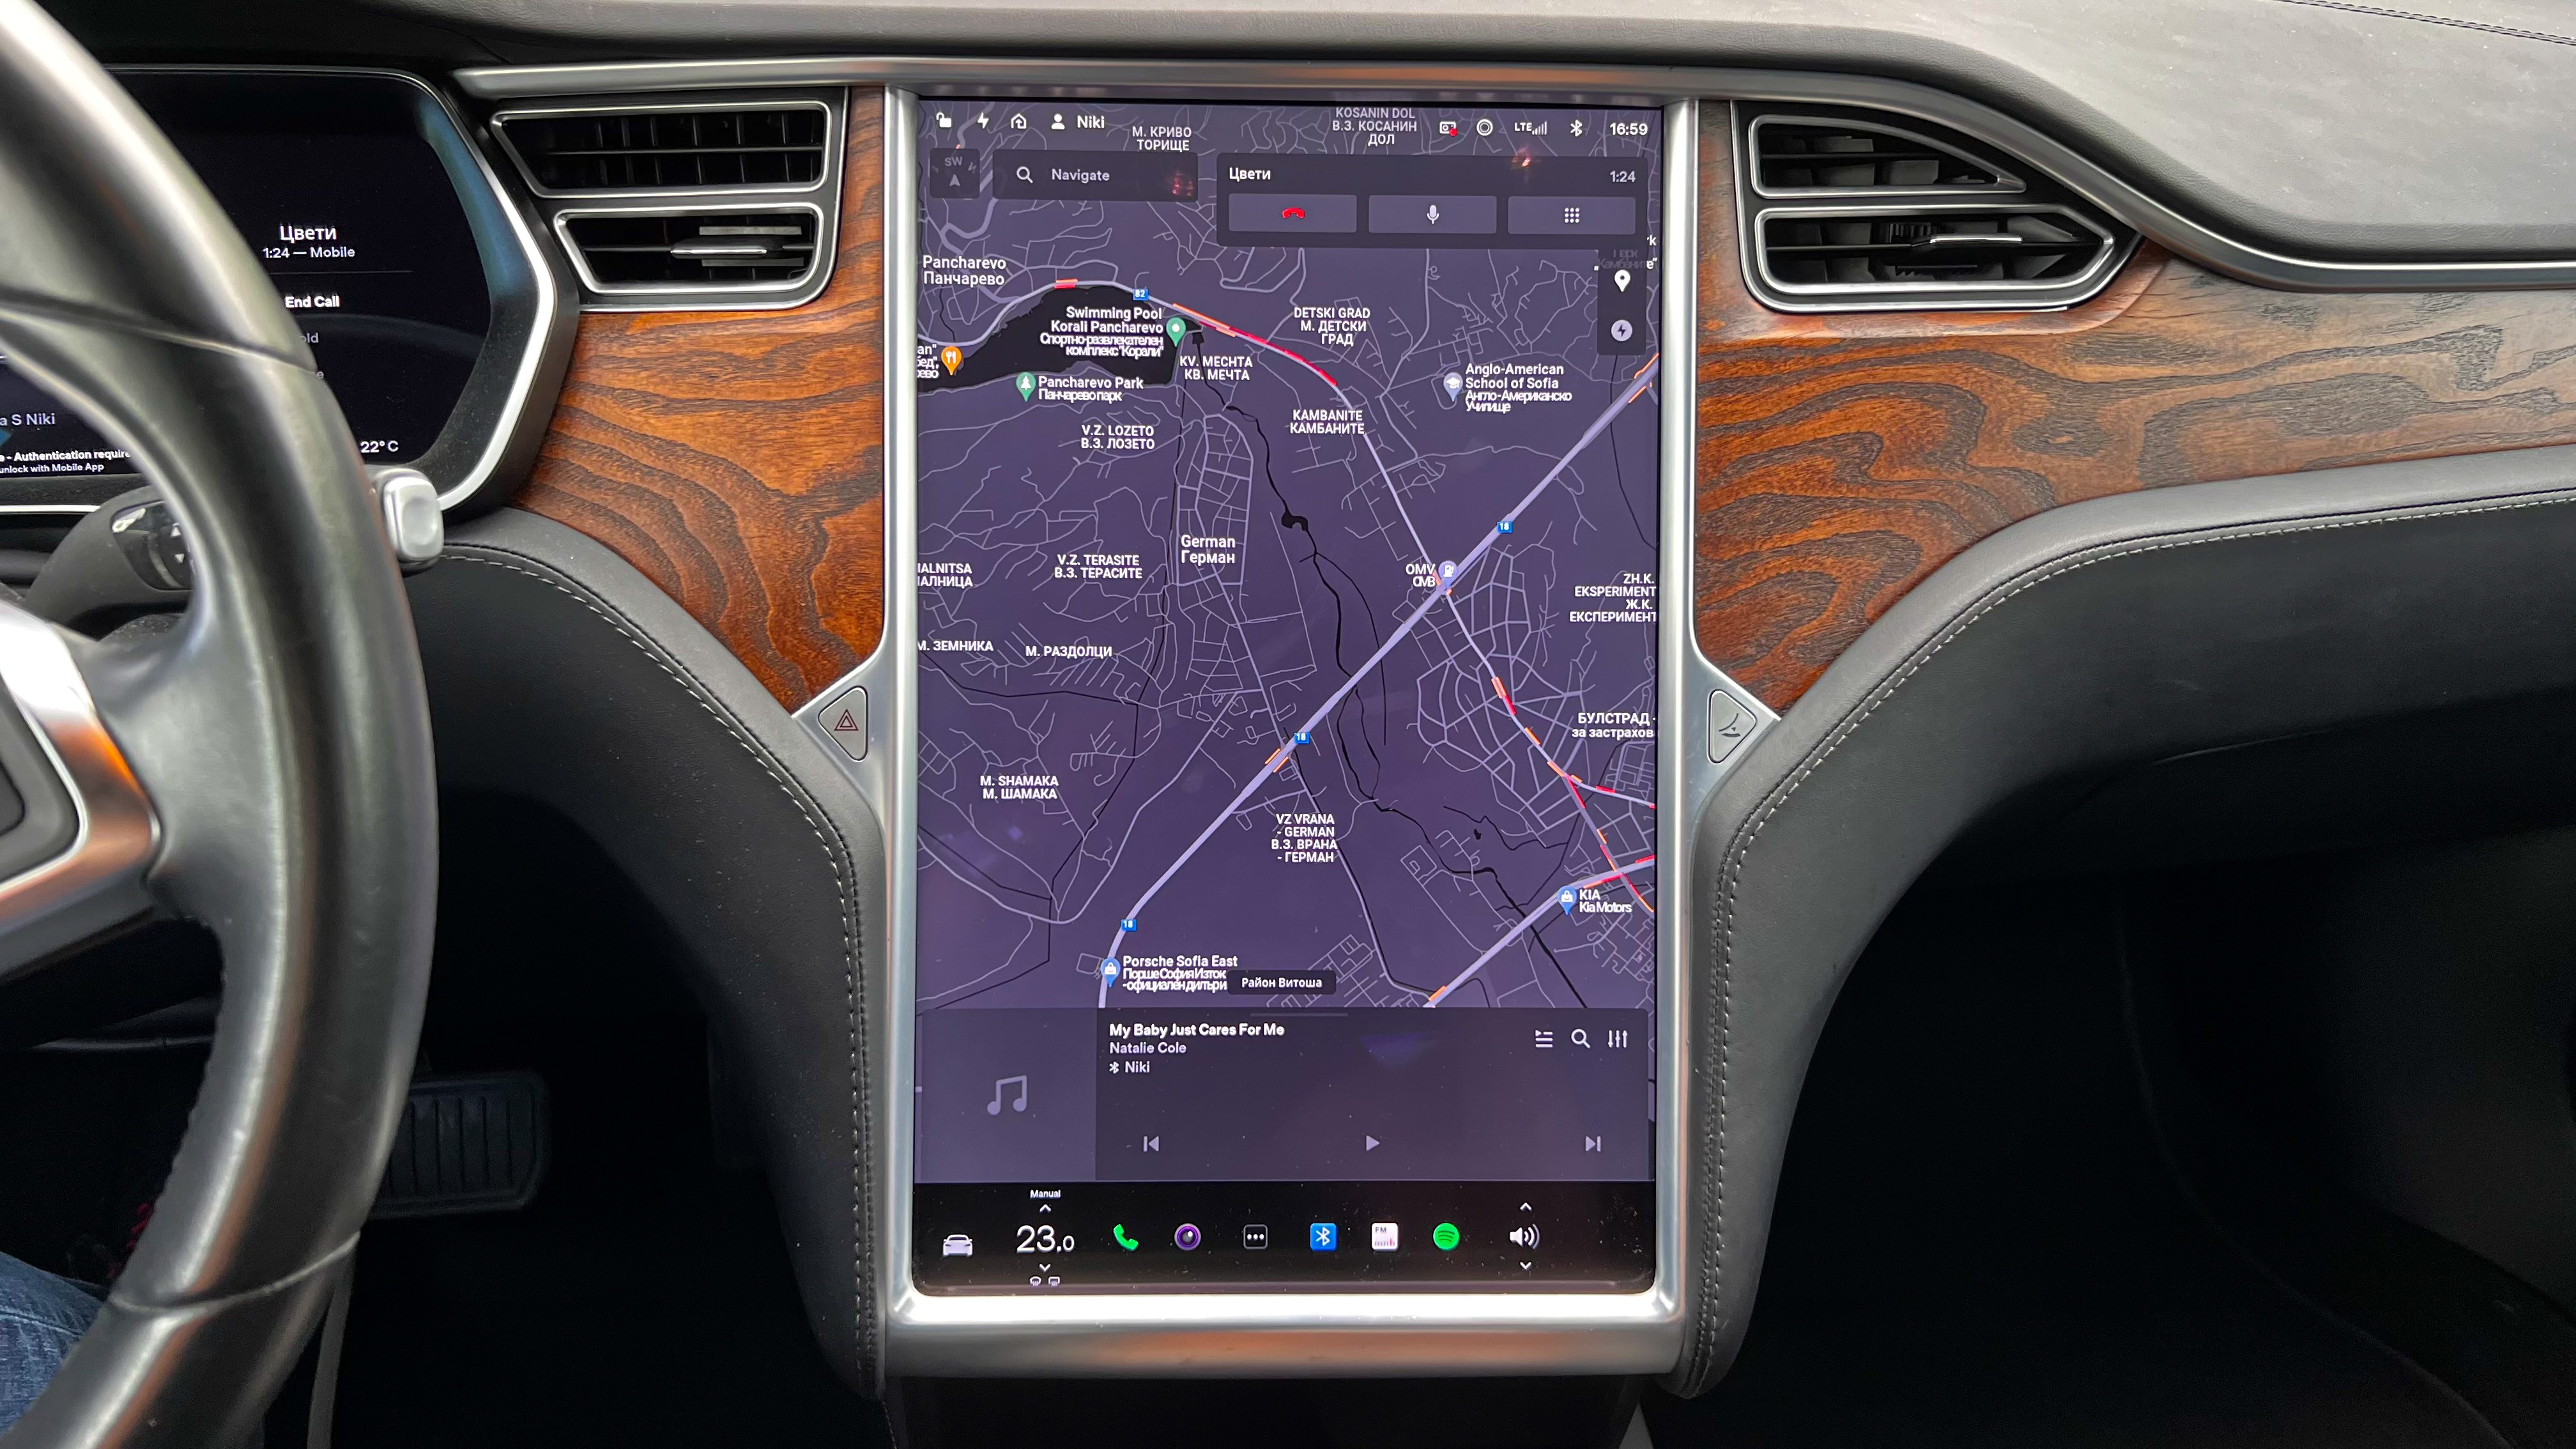 Обзор подержанного автомобиля Tesla Model S 75D 2018 года